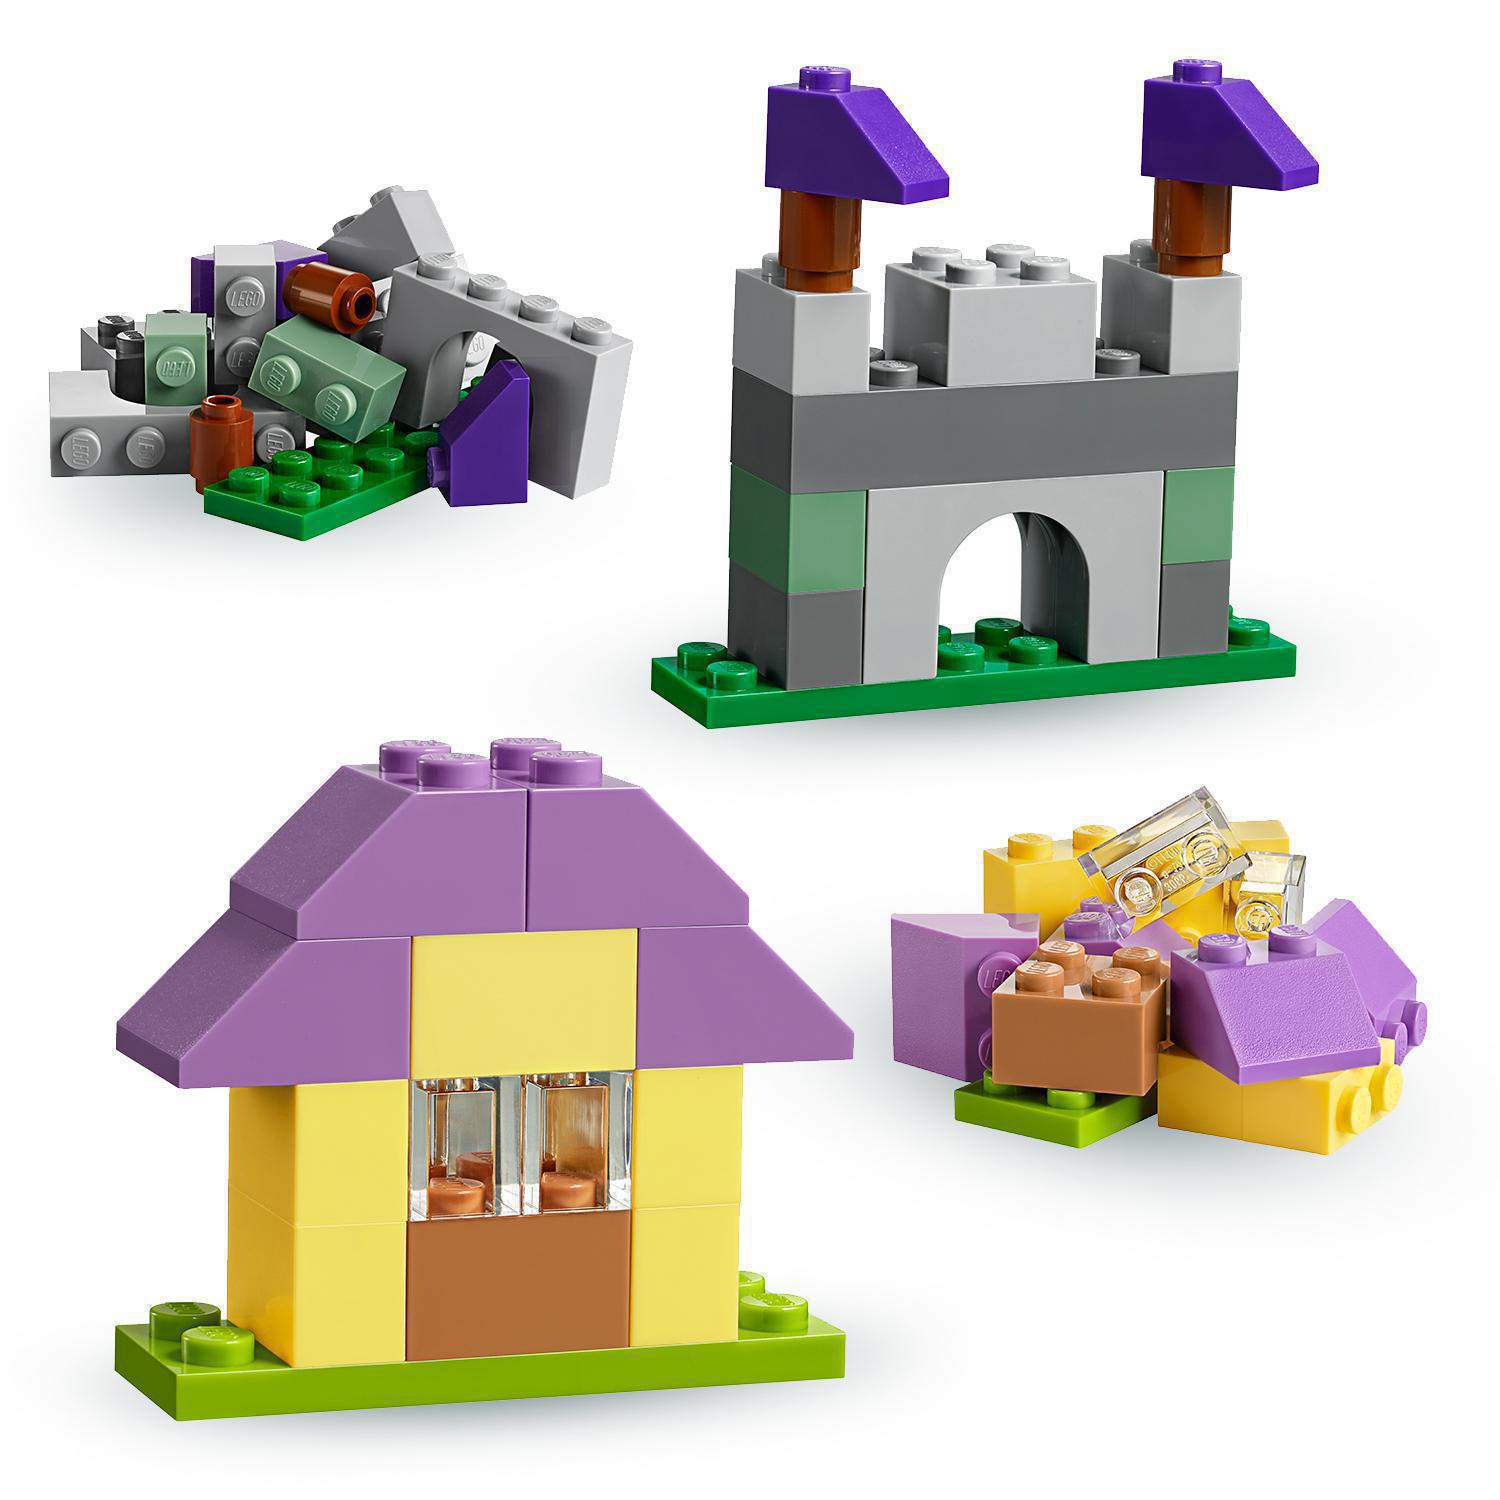 Конструктор LEGO Classic Чемоданчик для творчества и конструирования, 213 деталей (10713) - фото 7